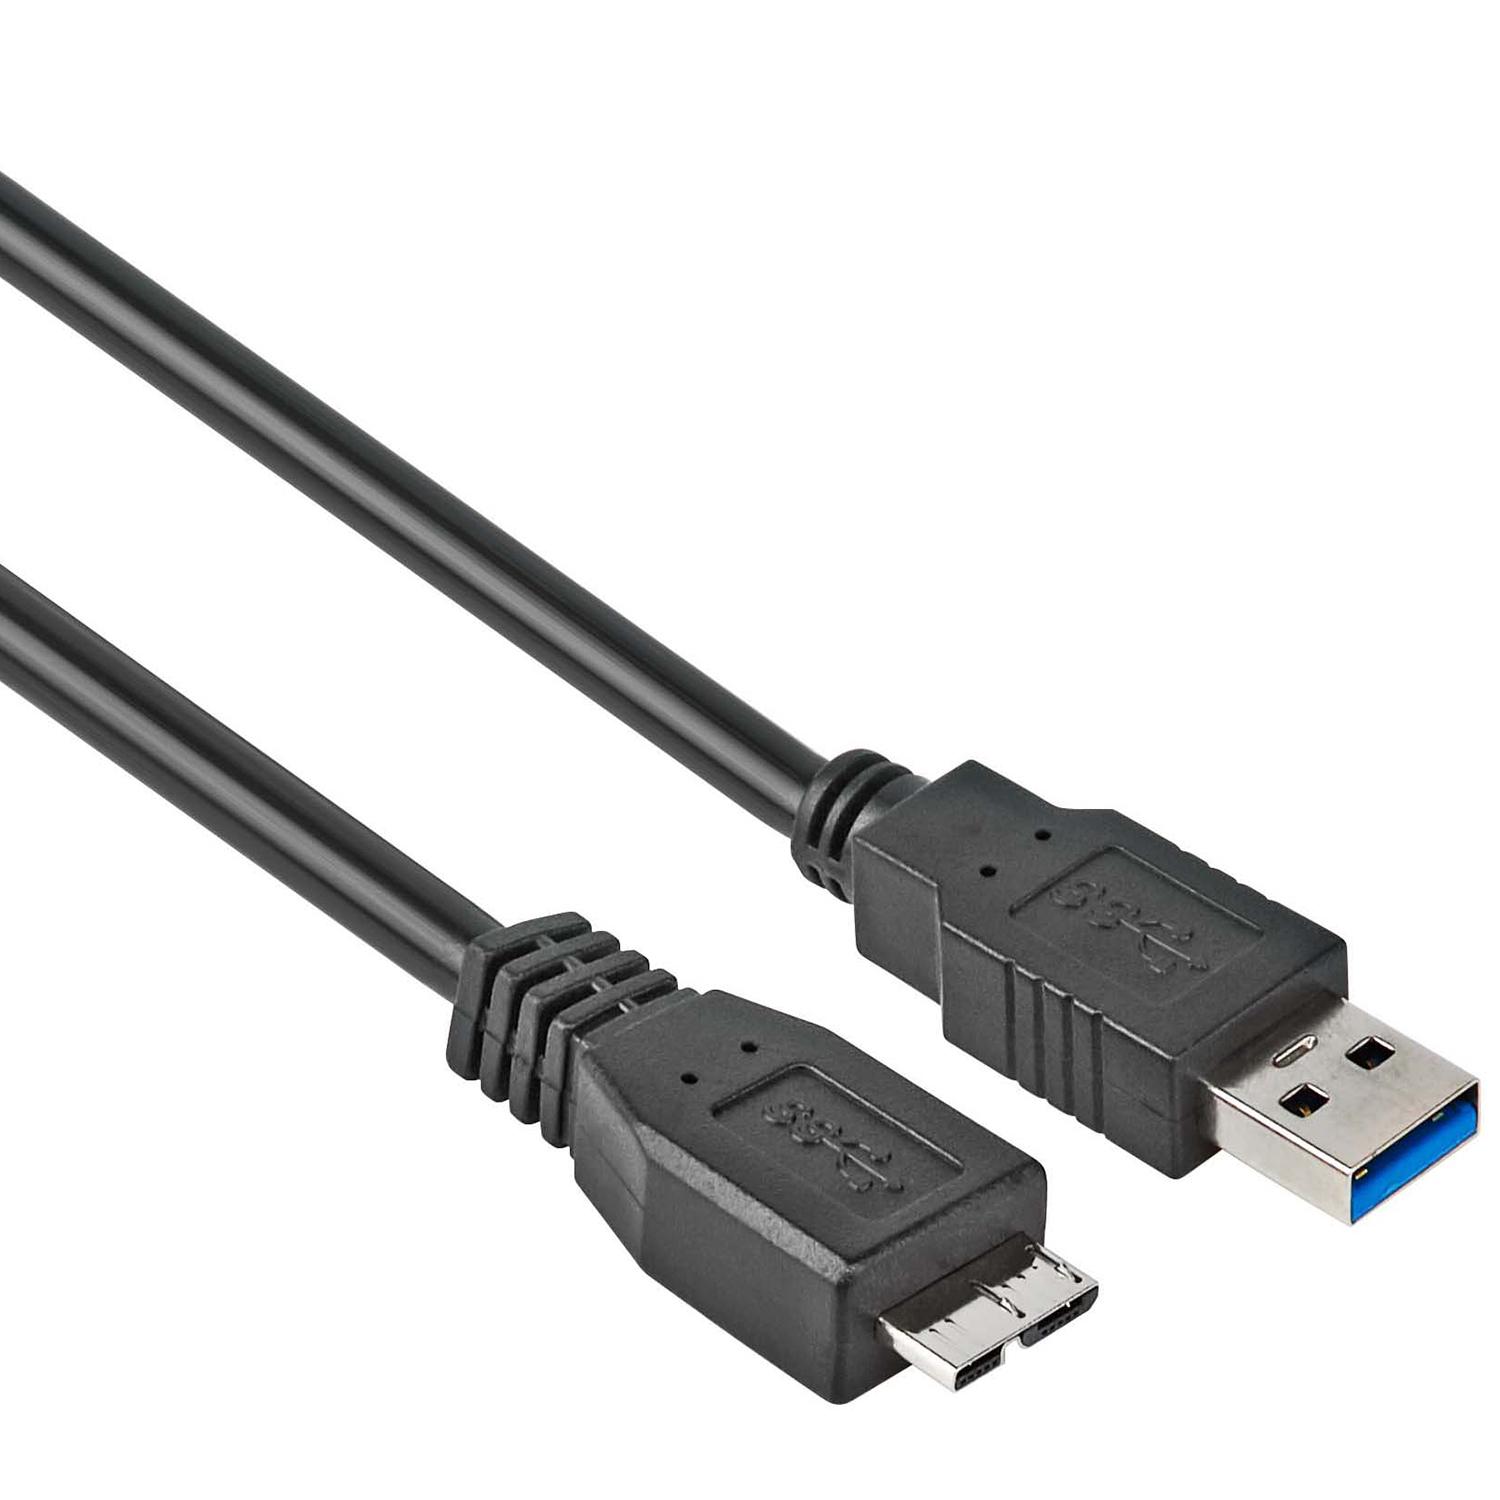 USB 3.0 micro - Versie: 3.0 - SuperSpeed, Aansluiting 1: USB B micro male, Aansluiting USB A male, Lengte: 0.5 meter.